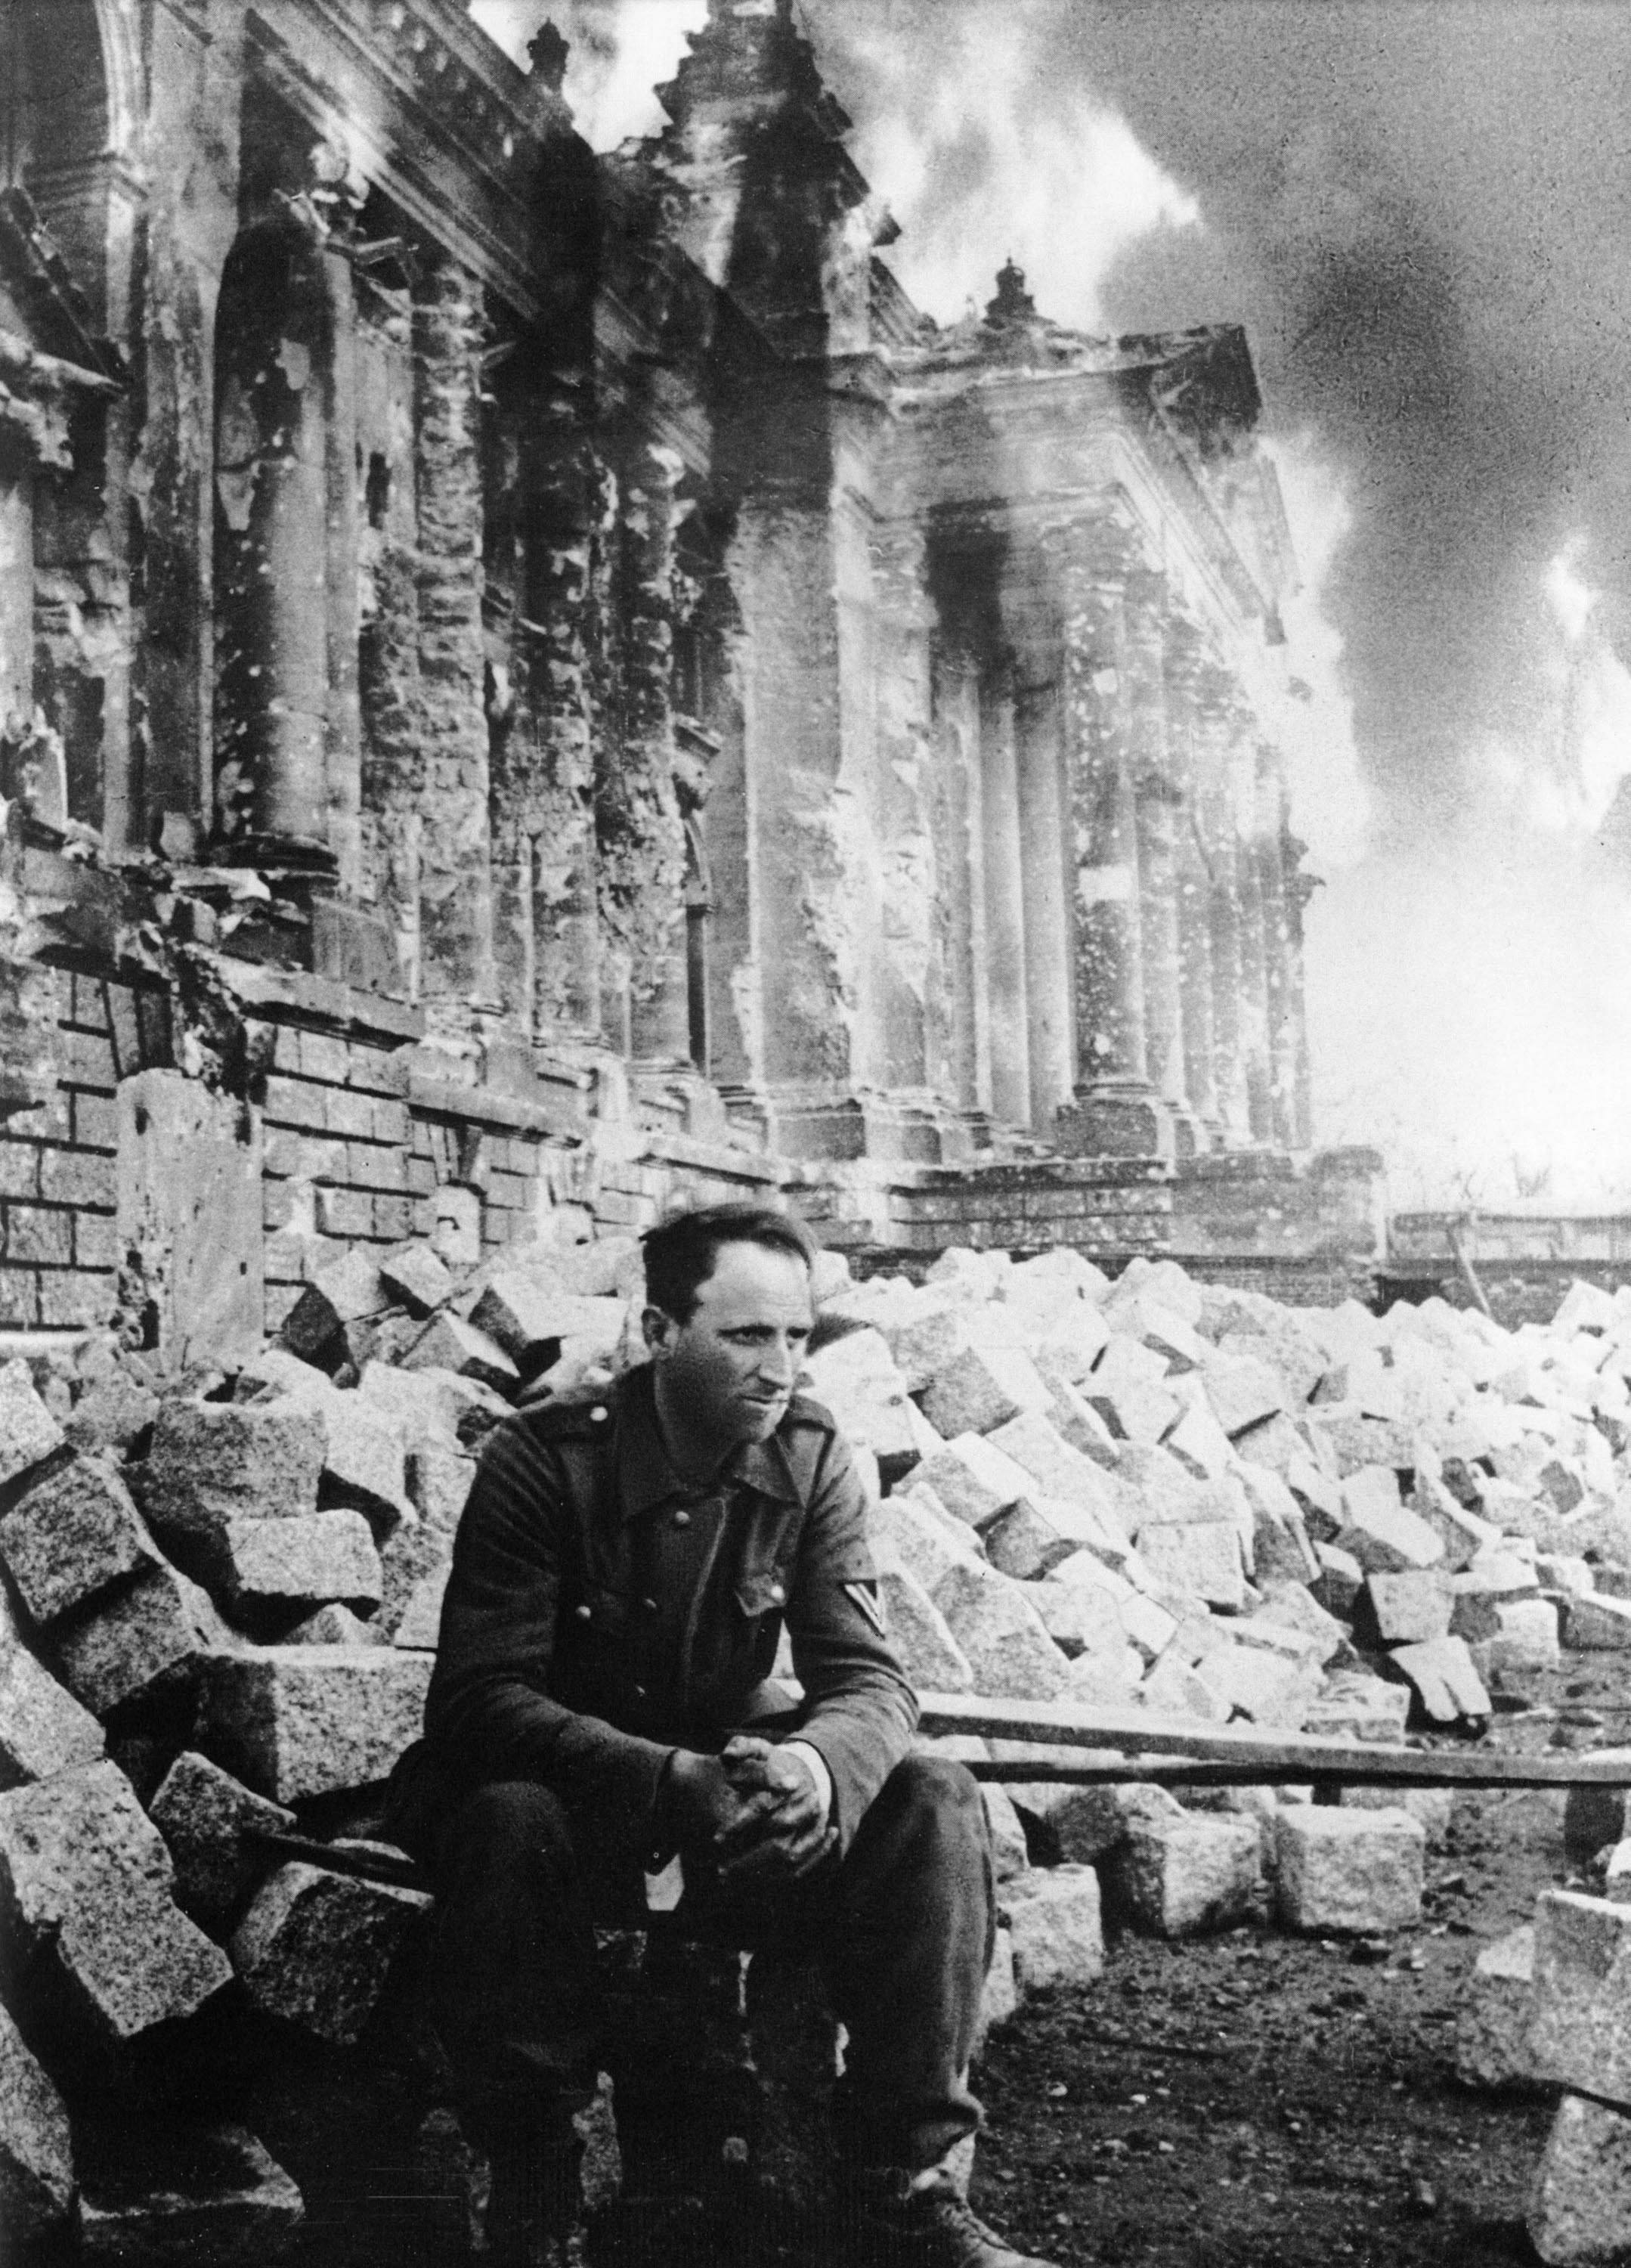 Пленный немецкий солдат на фоне горящего Рейхстага, Берлин, 1945 г. Знаменитая фотография, часто публиковавшаяся в книгах и на плакатах в СССР под названием "Энде" (нем. "Конец").